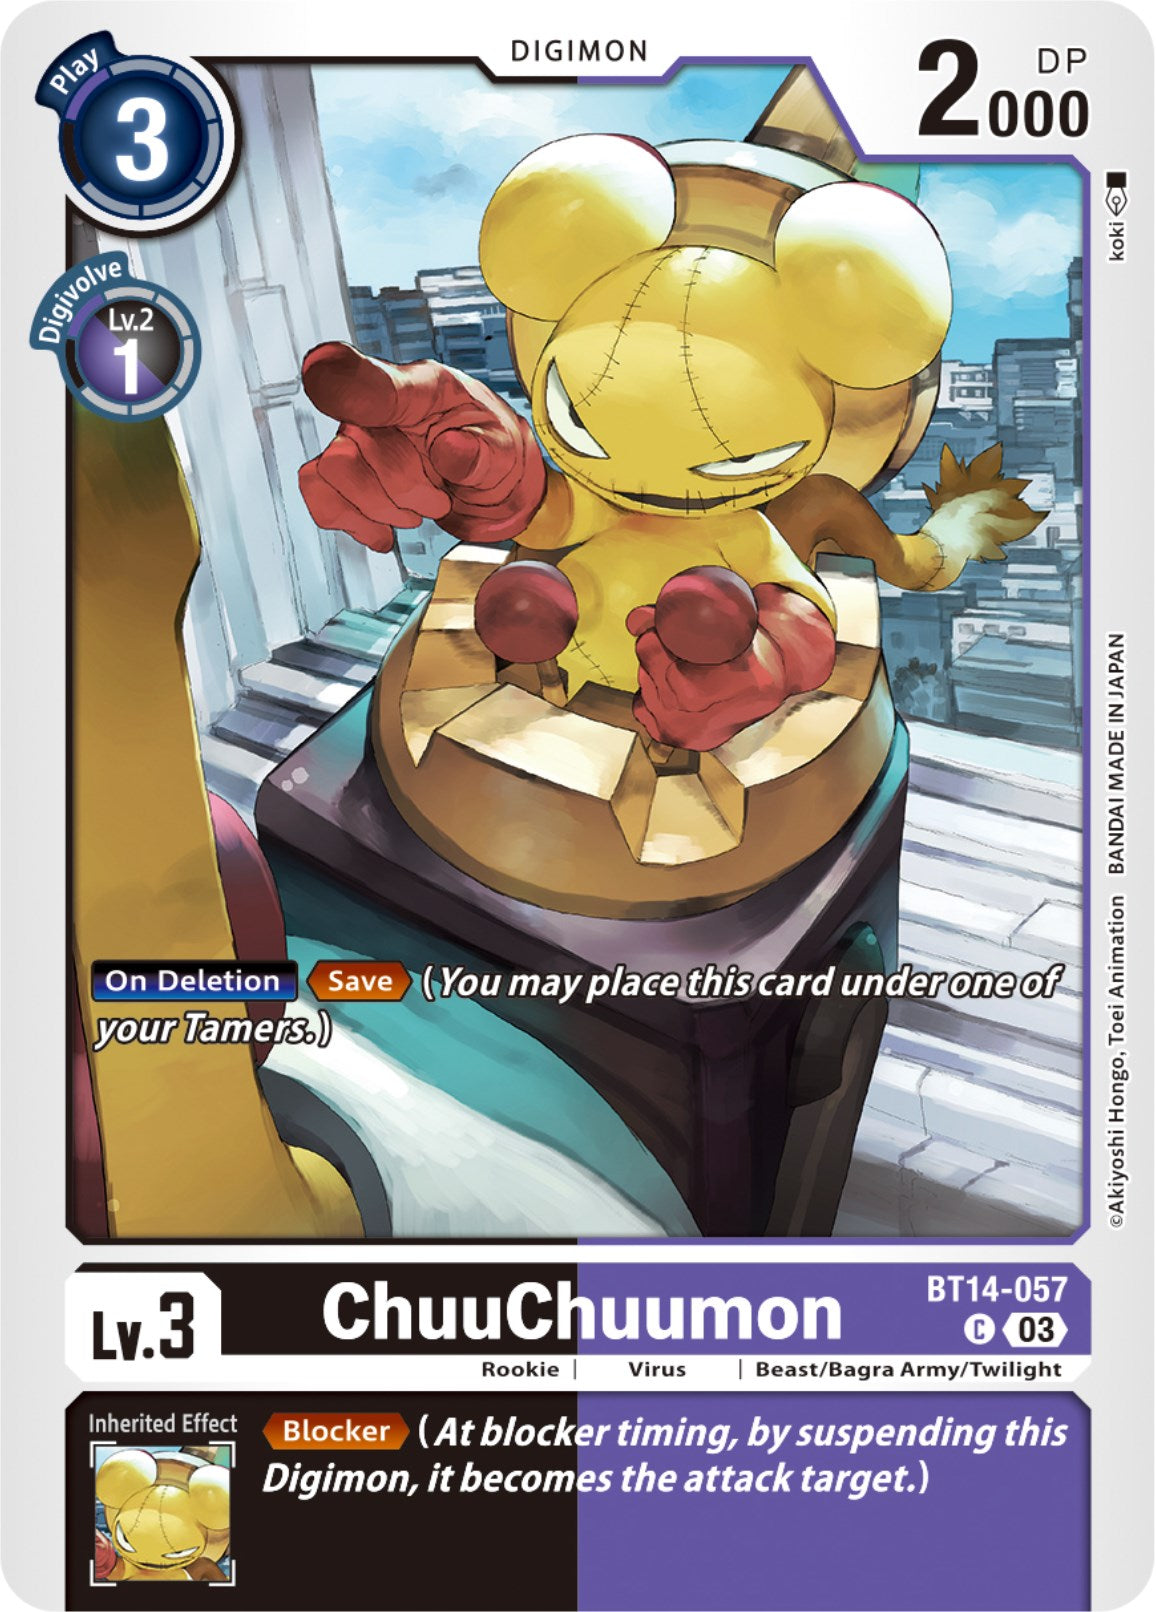 ChuuChuumon [BT14-057] [Blast Ace] | Shuffle n Cut Hobbies & Games